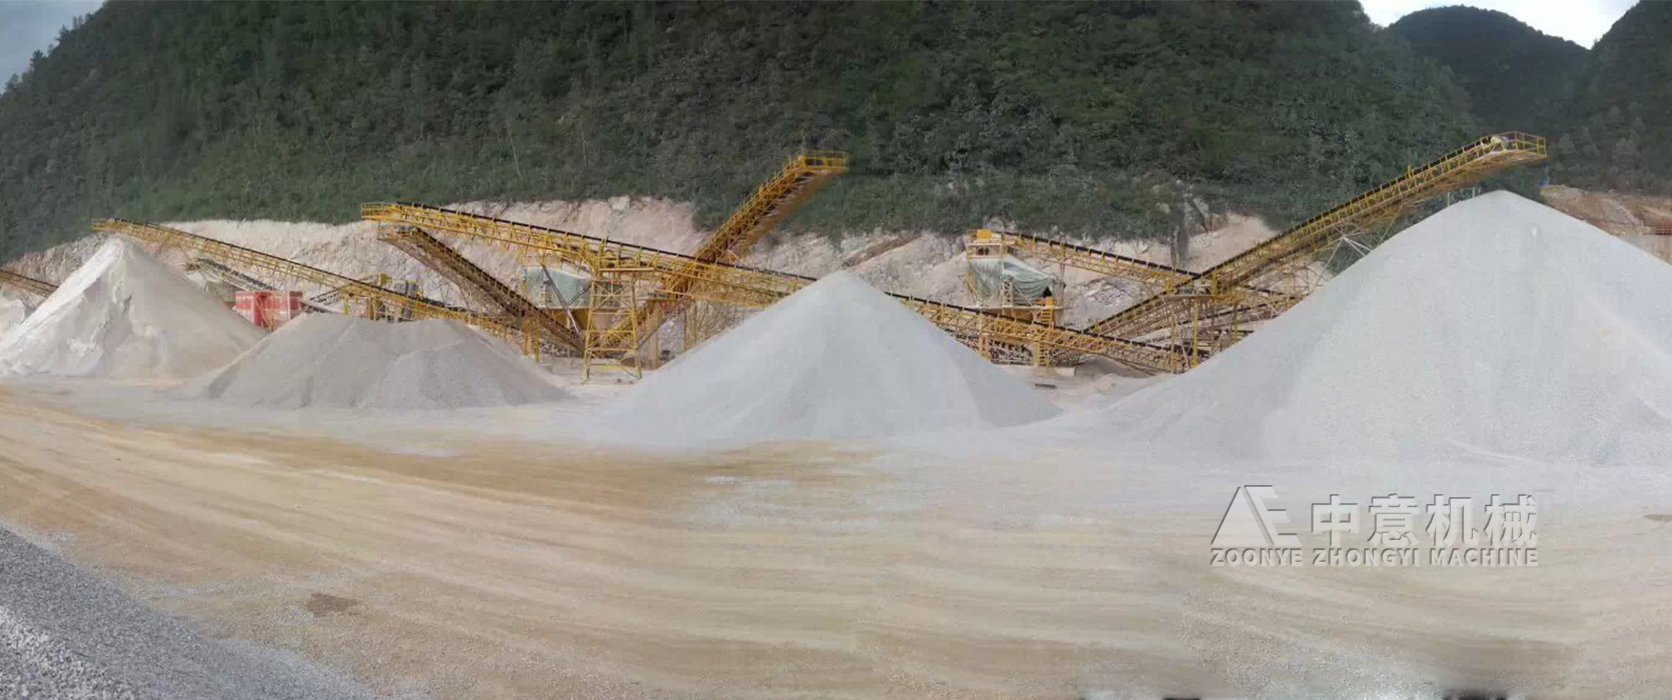 贵州日产3000吨砂石料生产线